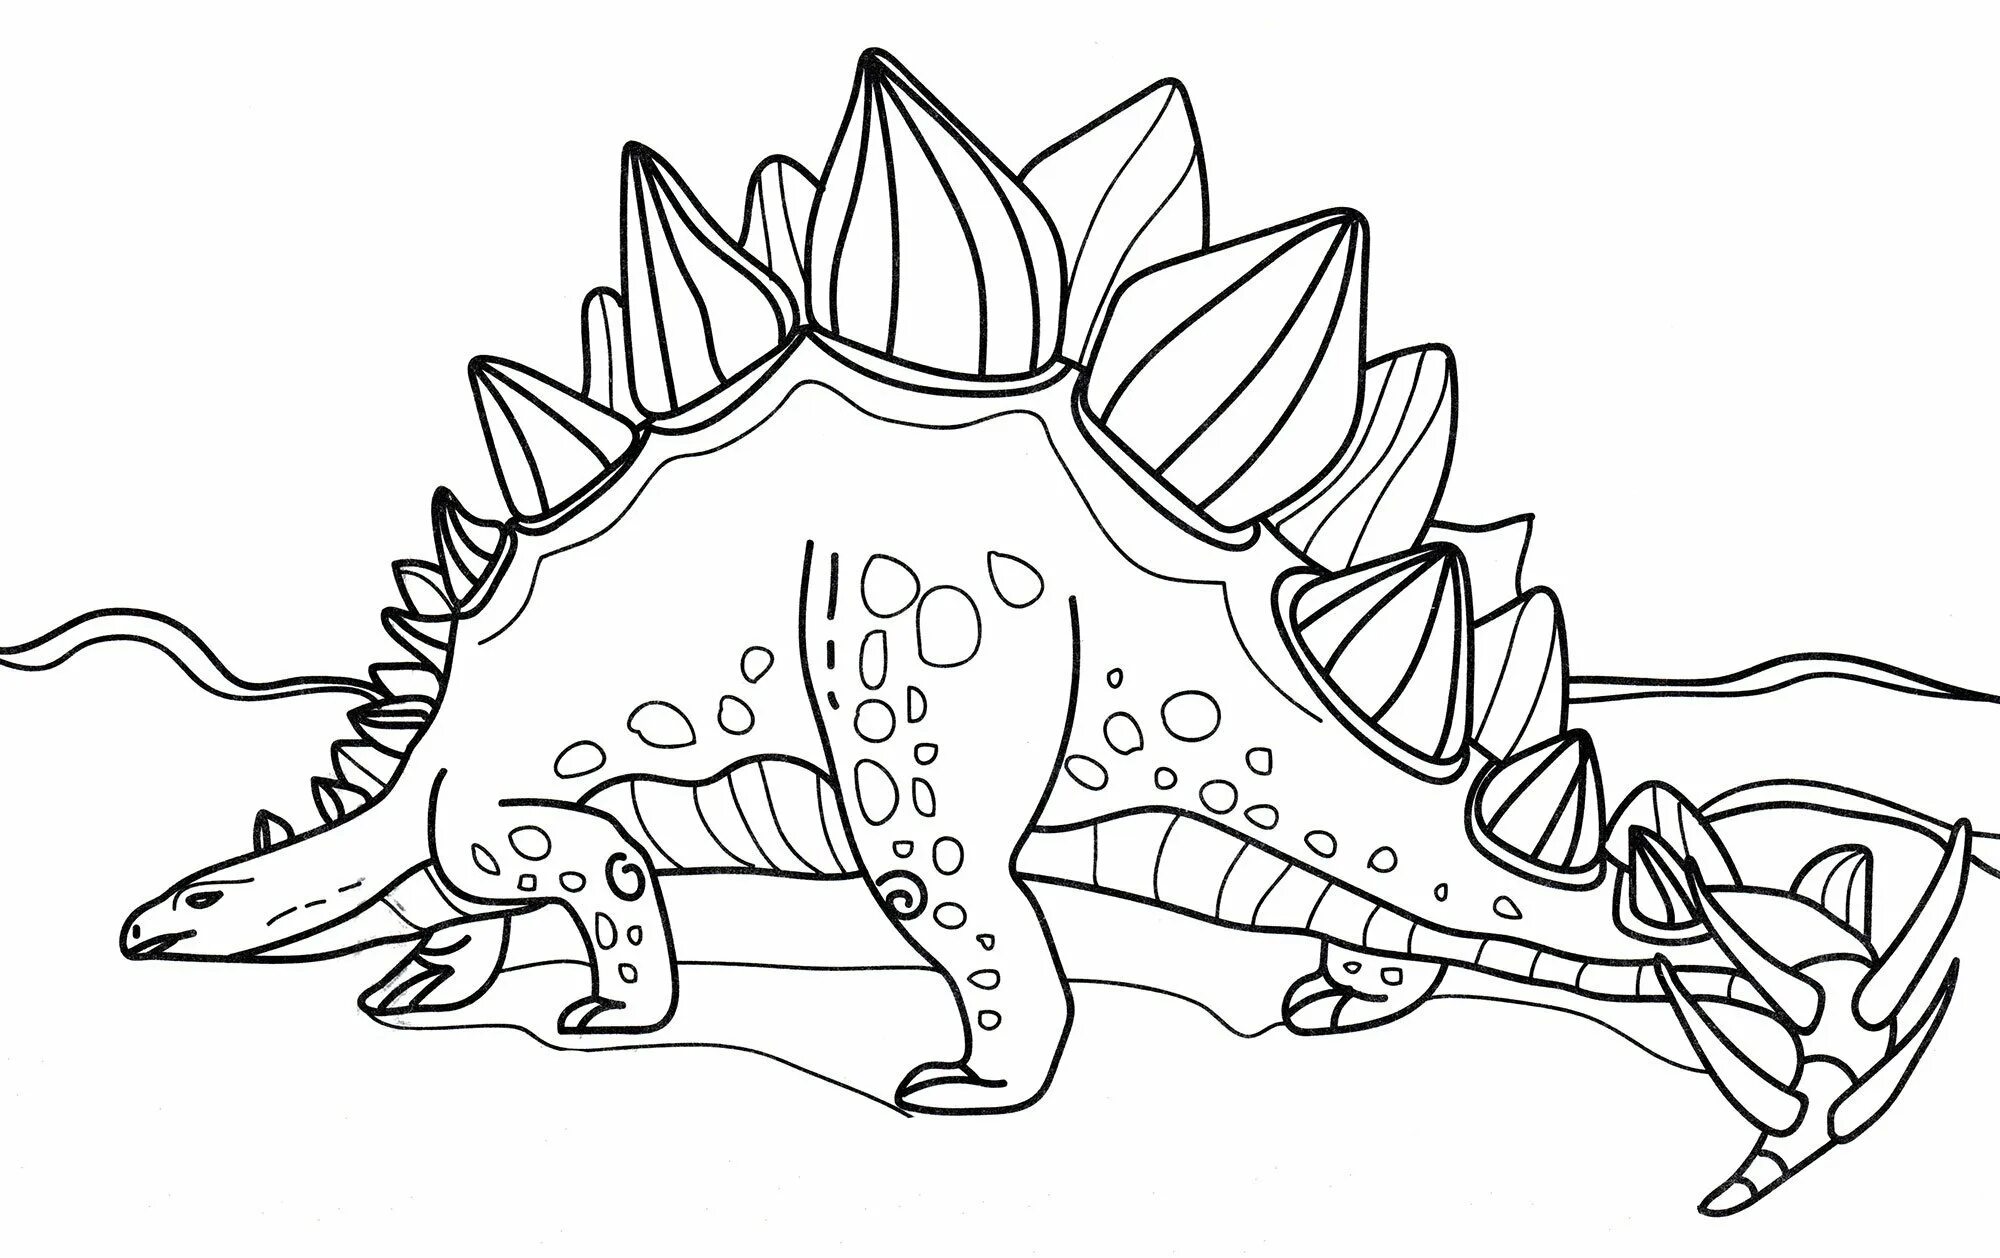 Раскраска динозавр формат а4. Раскраска динозавр Стегозавр раскраска. Раскраска динозавр Анкилозавр. Раскраска стегозазавр.